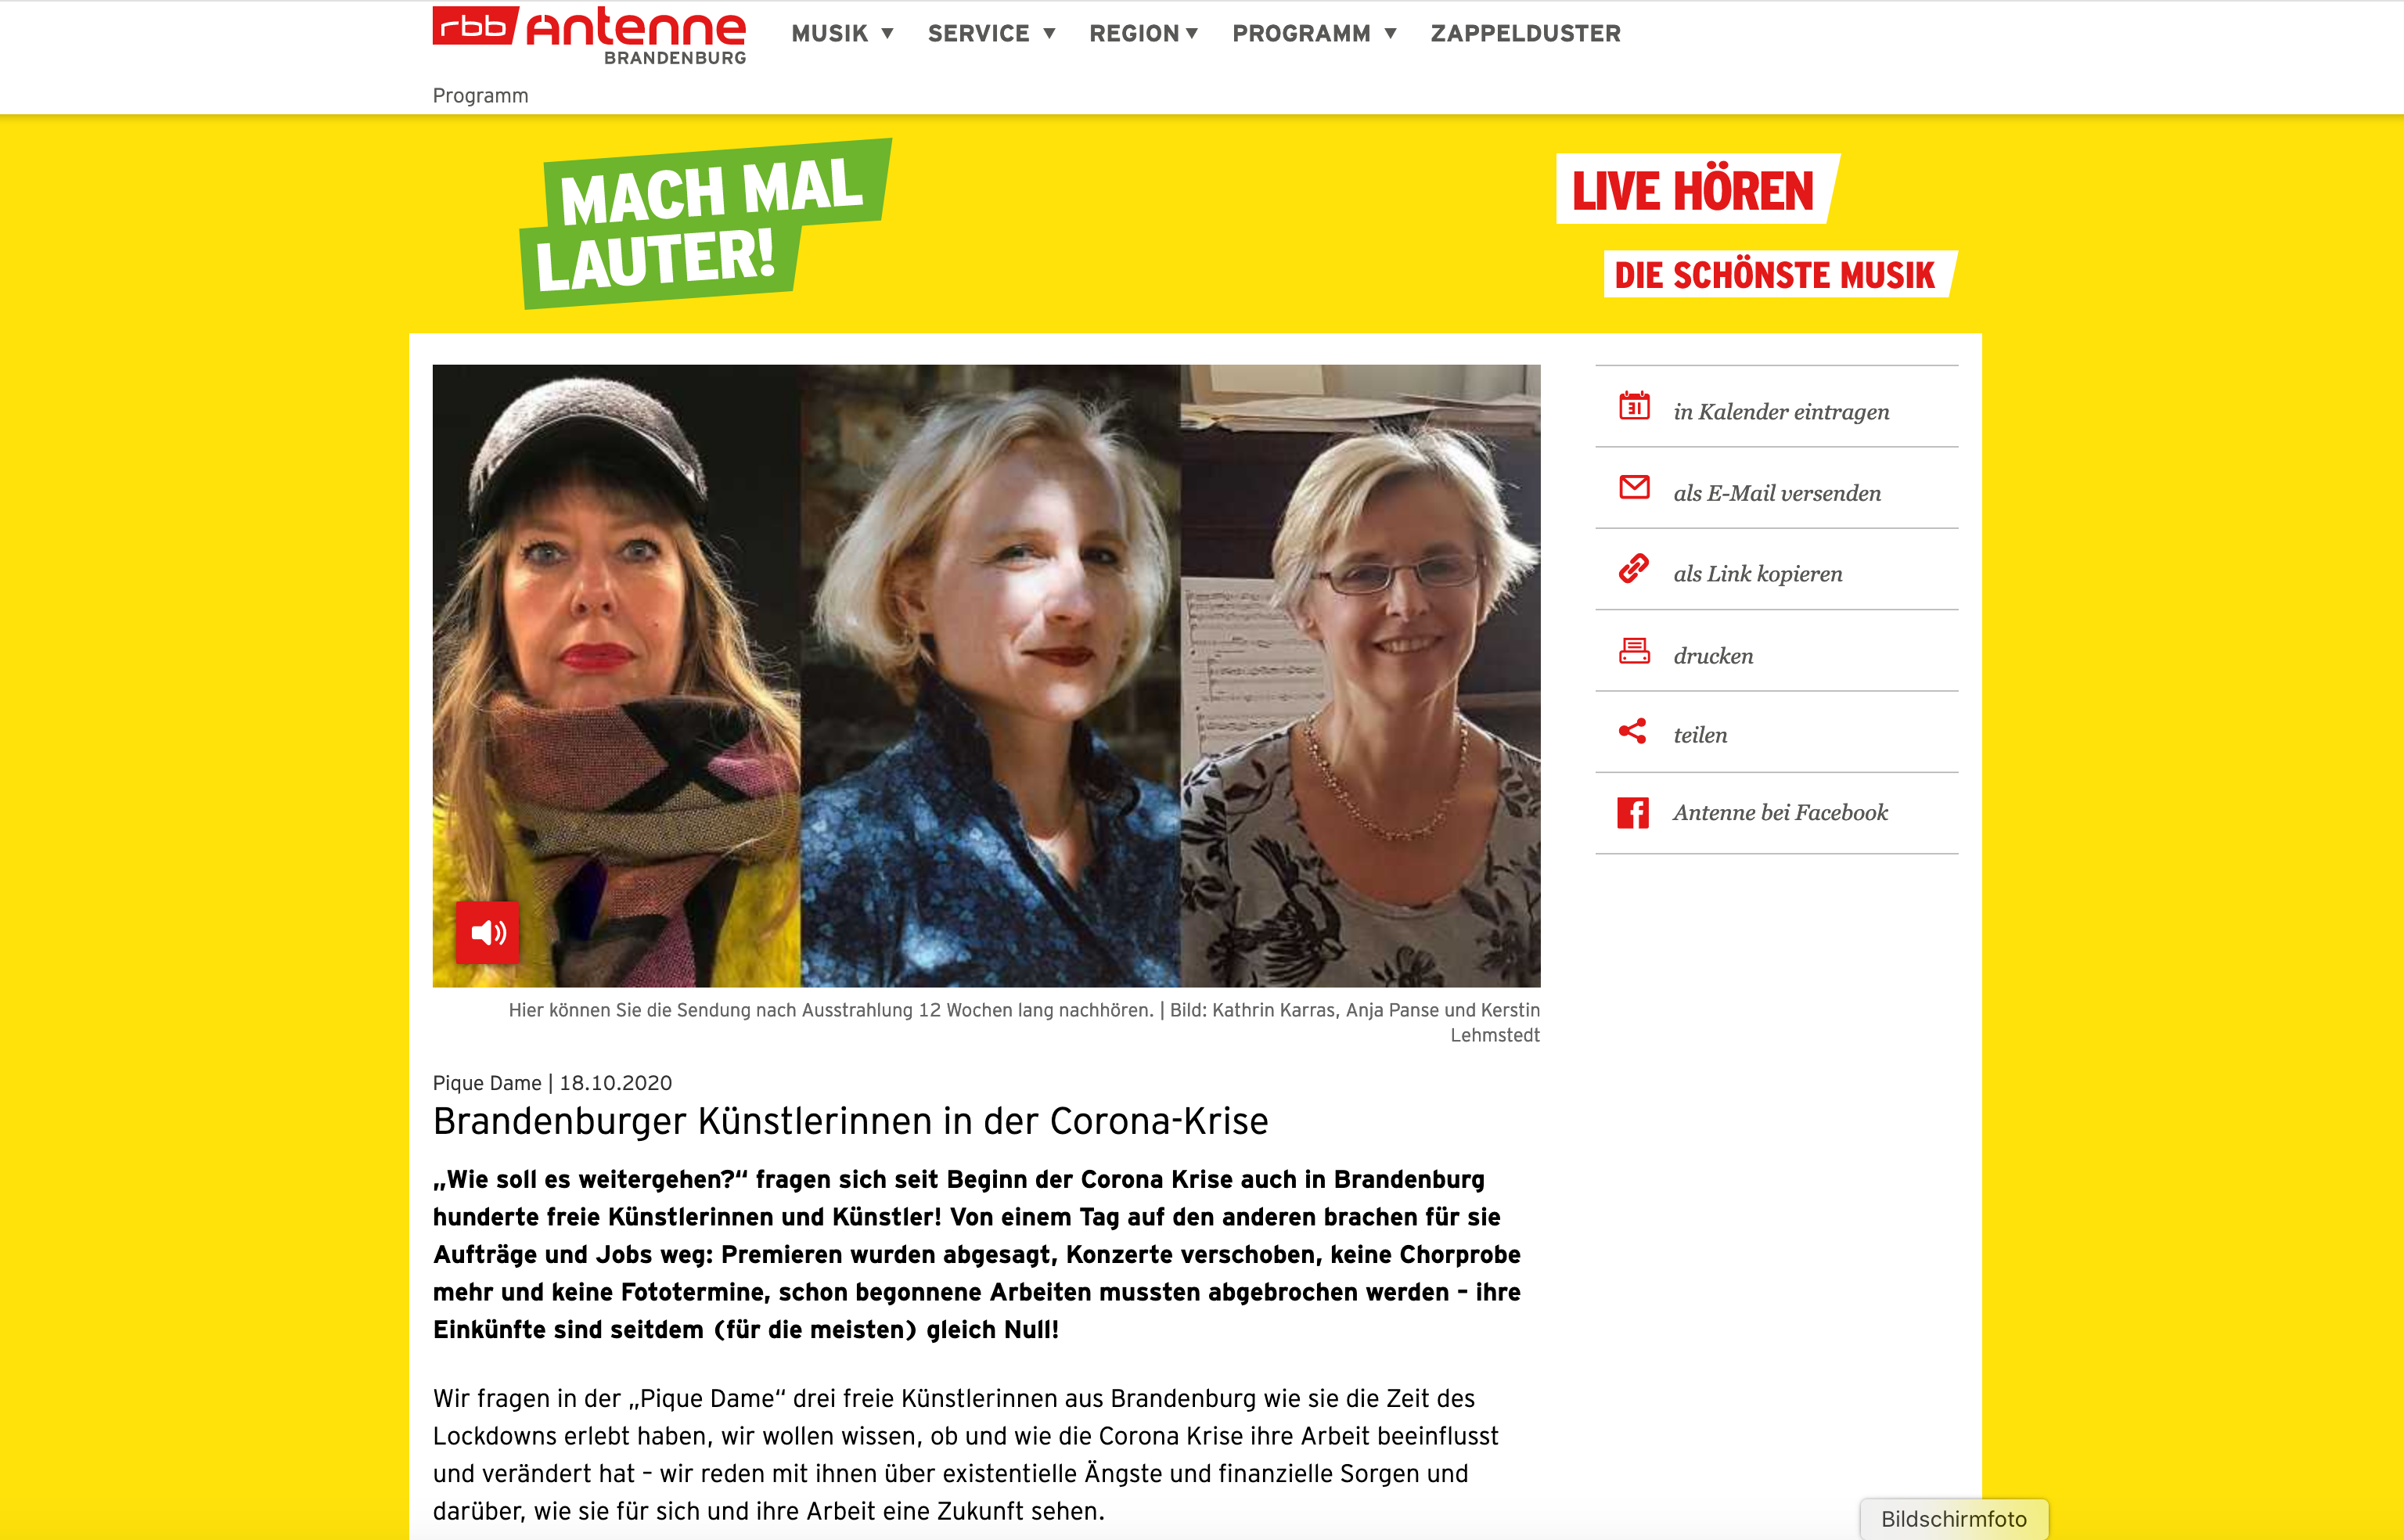 Radio Feature - Brandenburger Künstlerinnen in der Corona-Krise